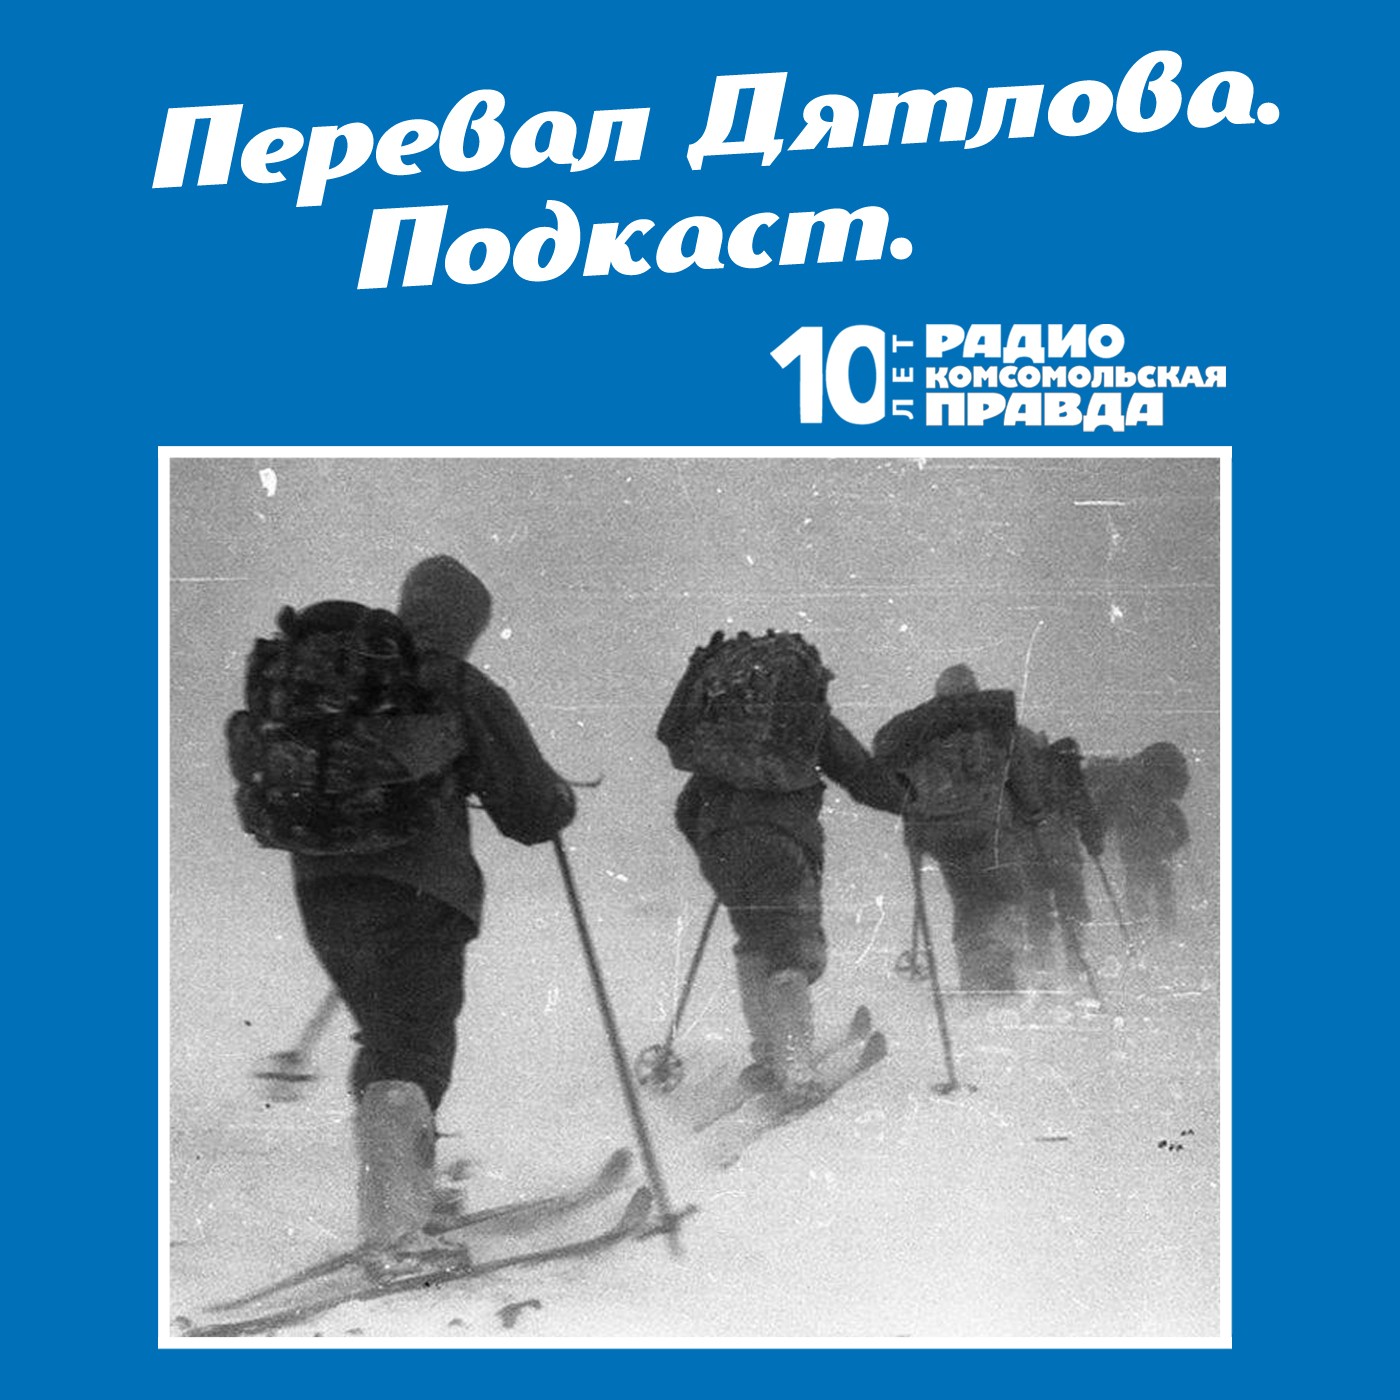 Скачать Трагедия на перевале Дятлова: 64 версии загадочной гибели туристов в 1959 году. Часть 105 и 106 - Радио «Комсомольская правда»